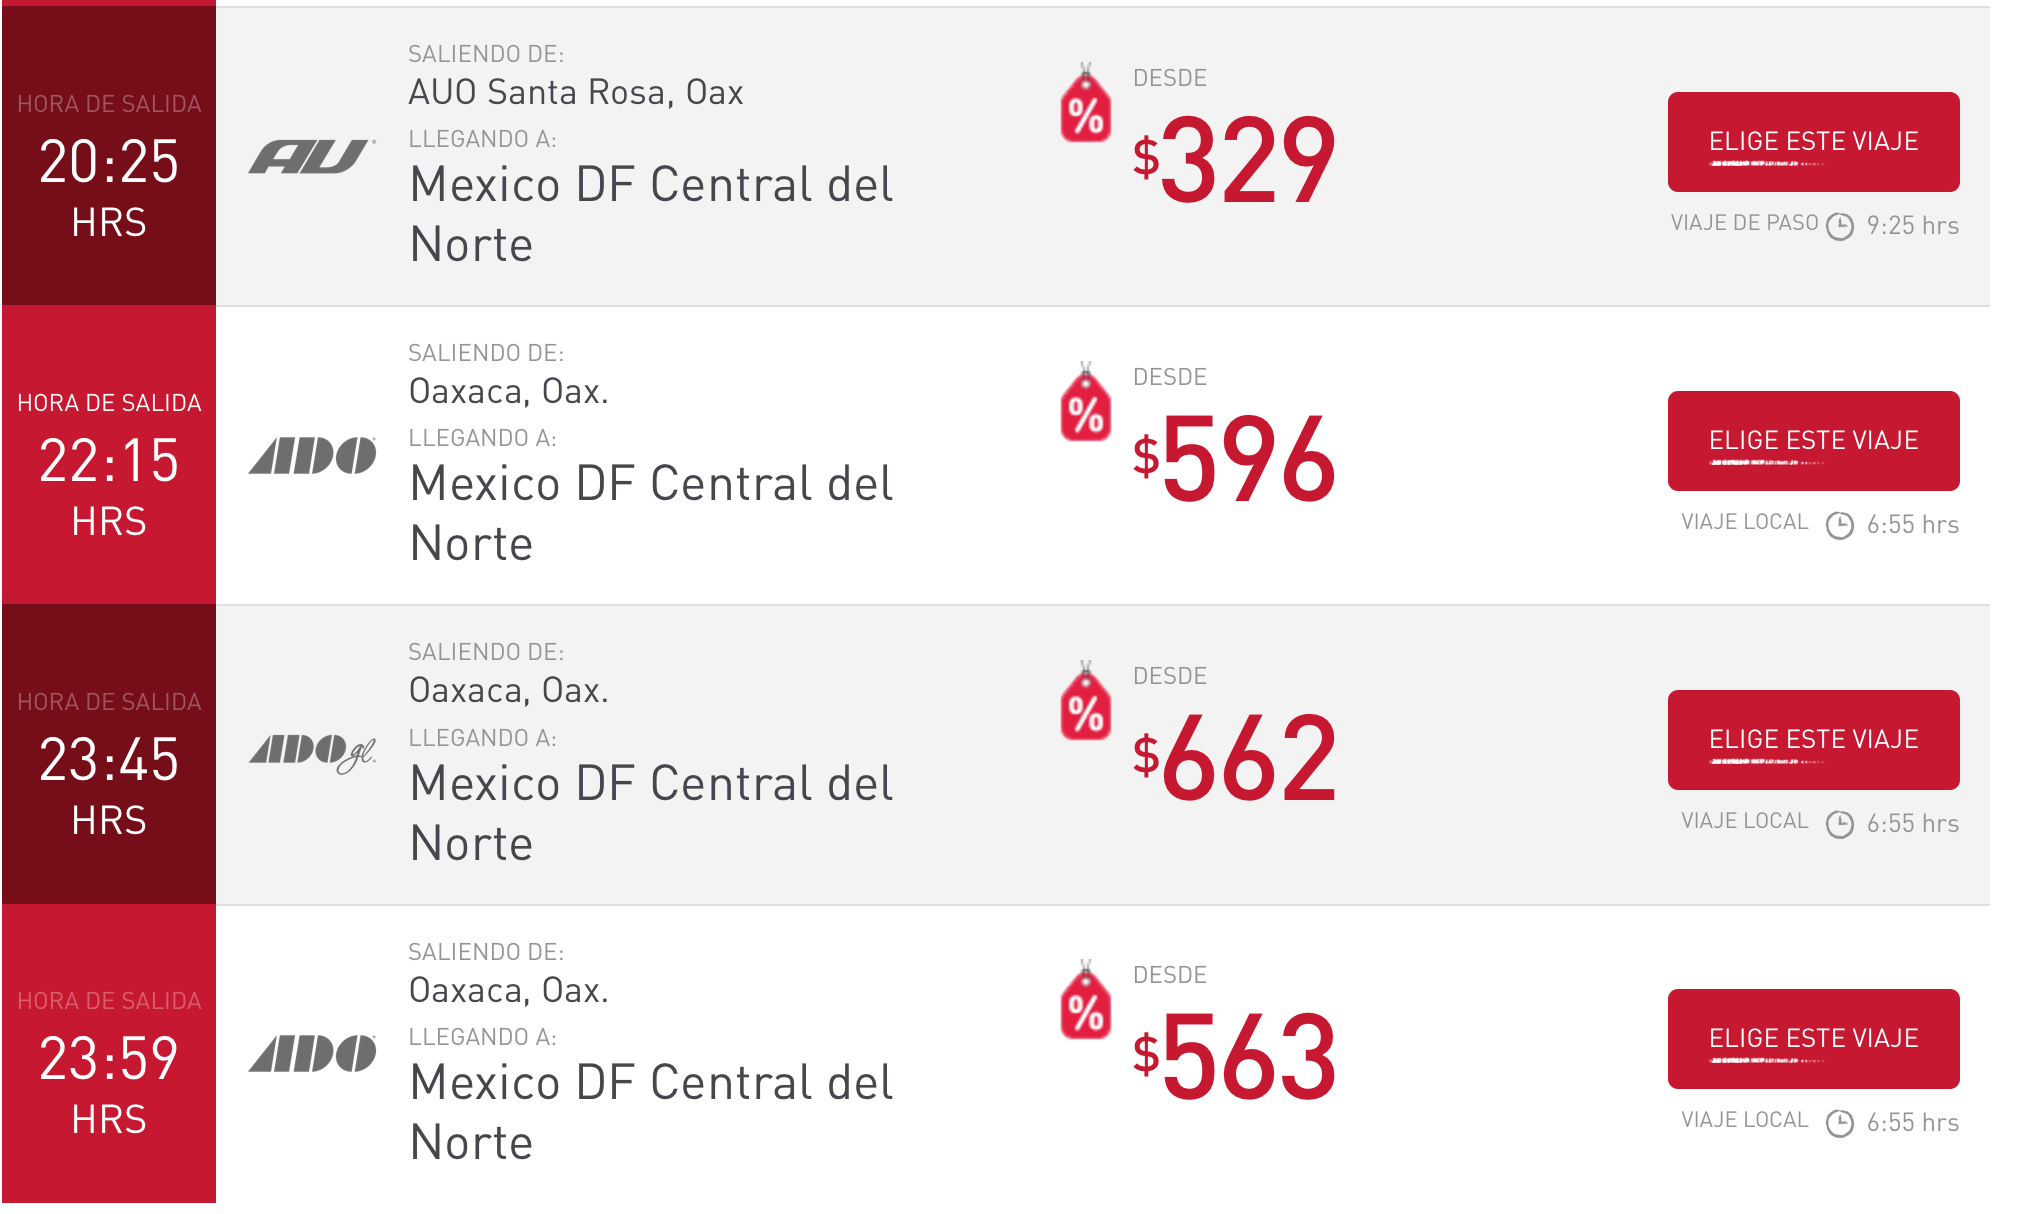 オアハカ メキシコシティ バス 時刻表